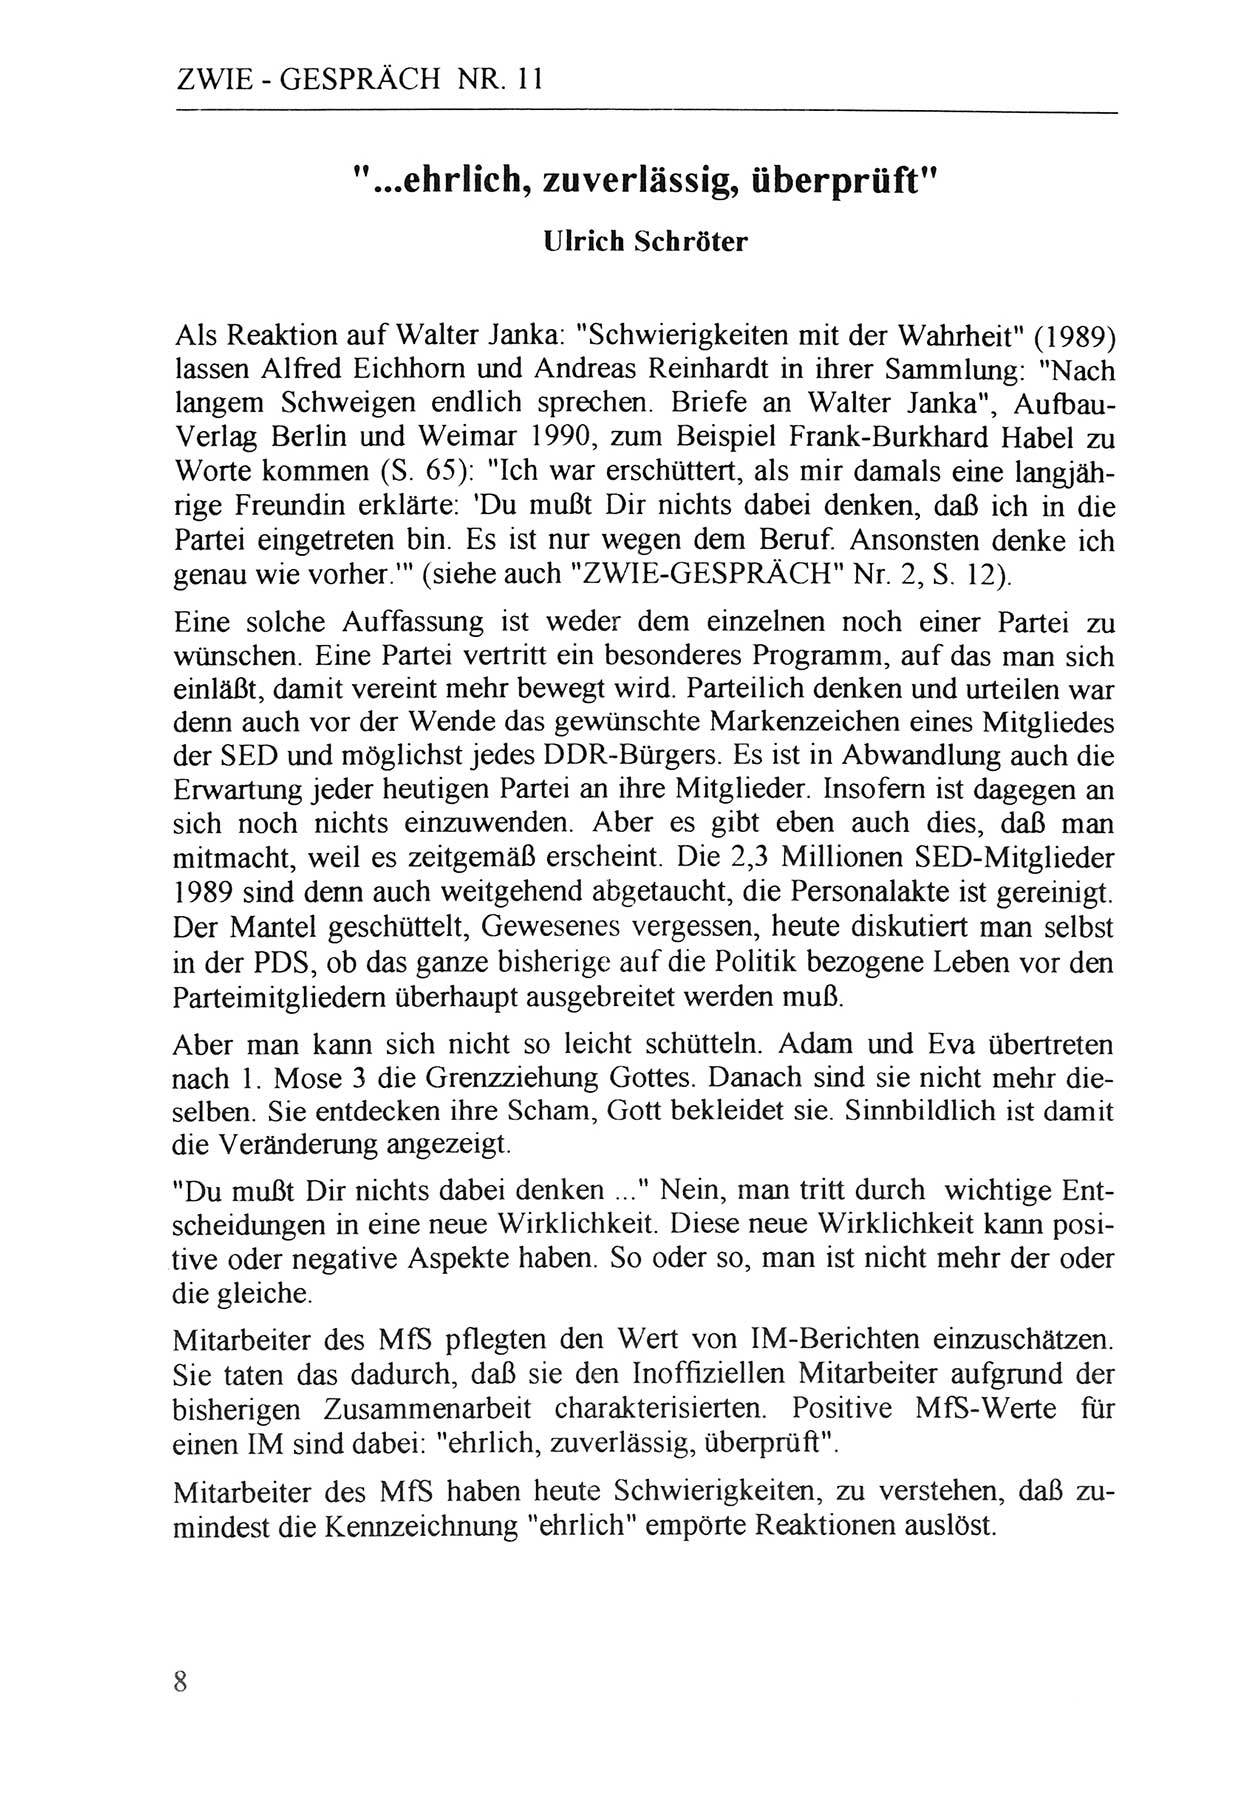 Zwie-Gespräch, Beiträge zur Aufarbeitung der Staatssicherheits-Vergangenheit [Deutsche Demokratische Republik (DDR)], Ausgabe Nr. 11, Berlin 1992, Seite 8 (Zwie-Gespr. Ausg. 11 1992, S. 8)